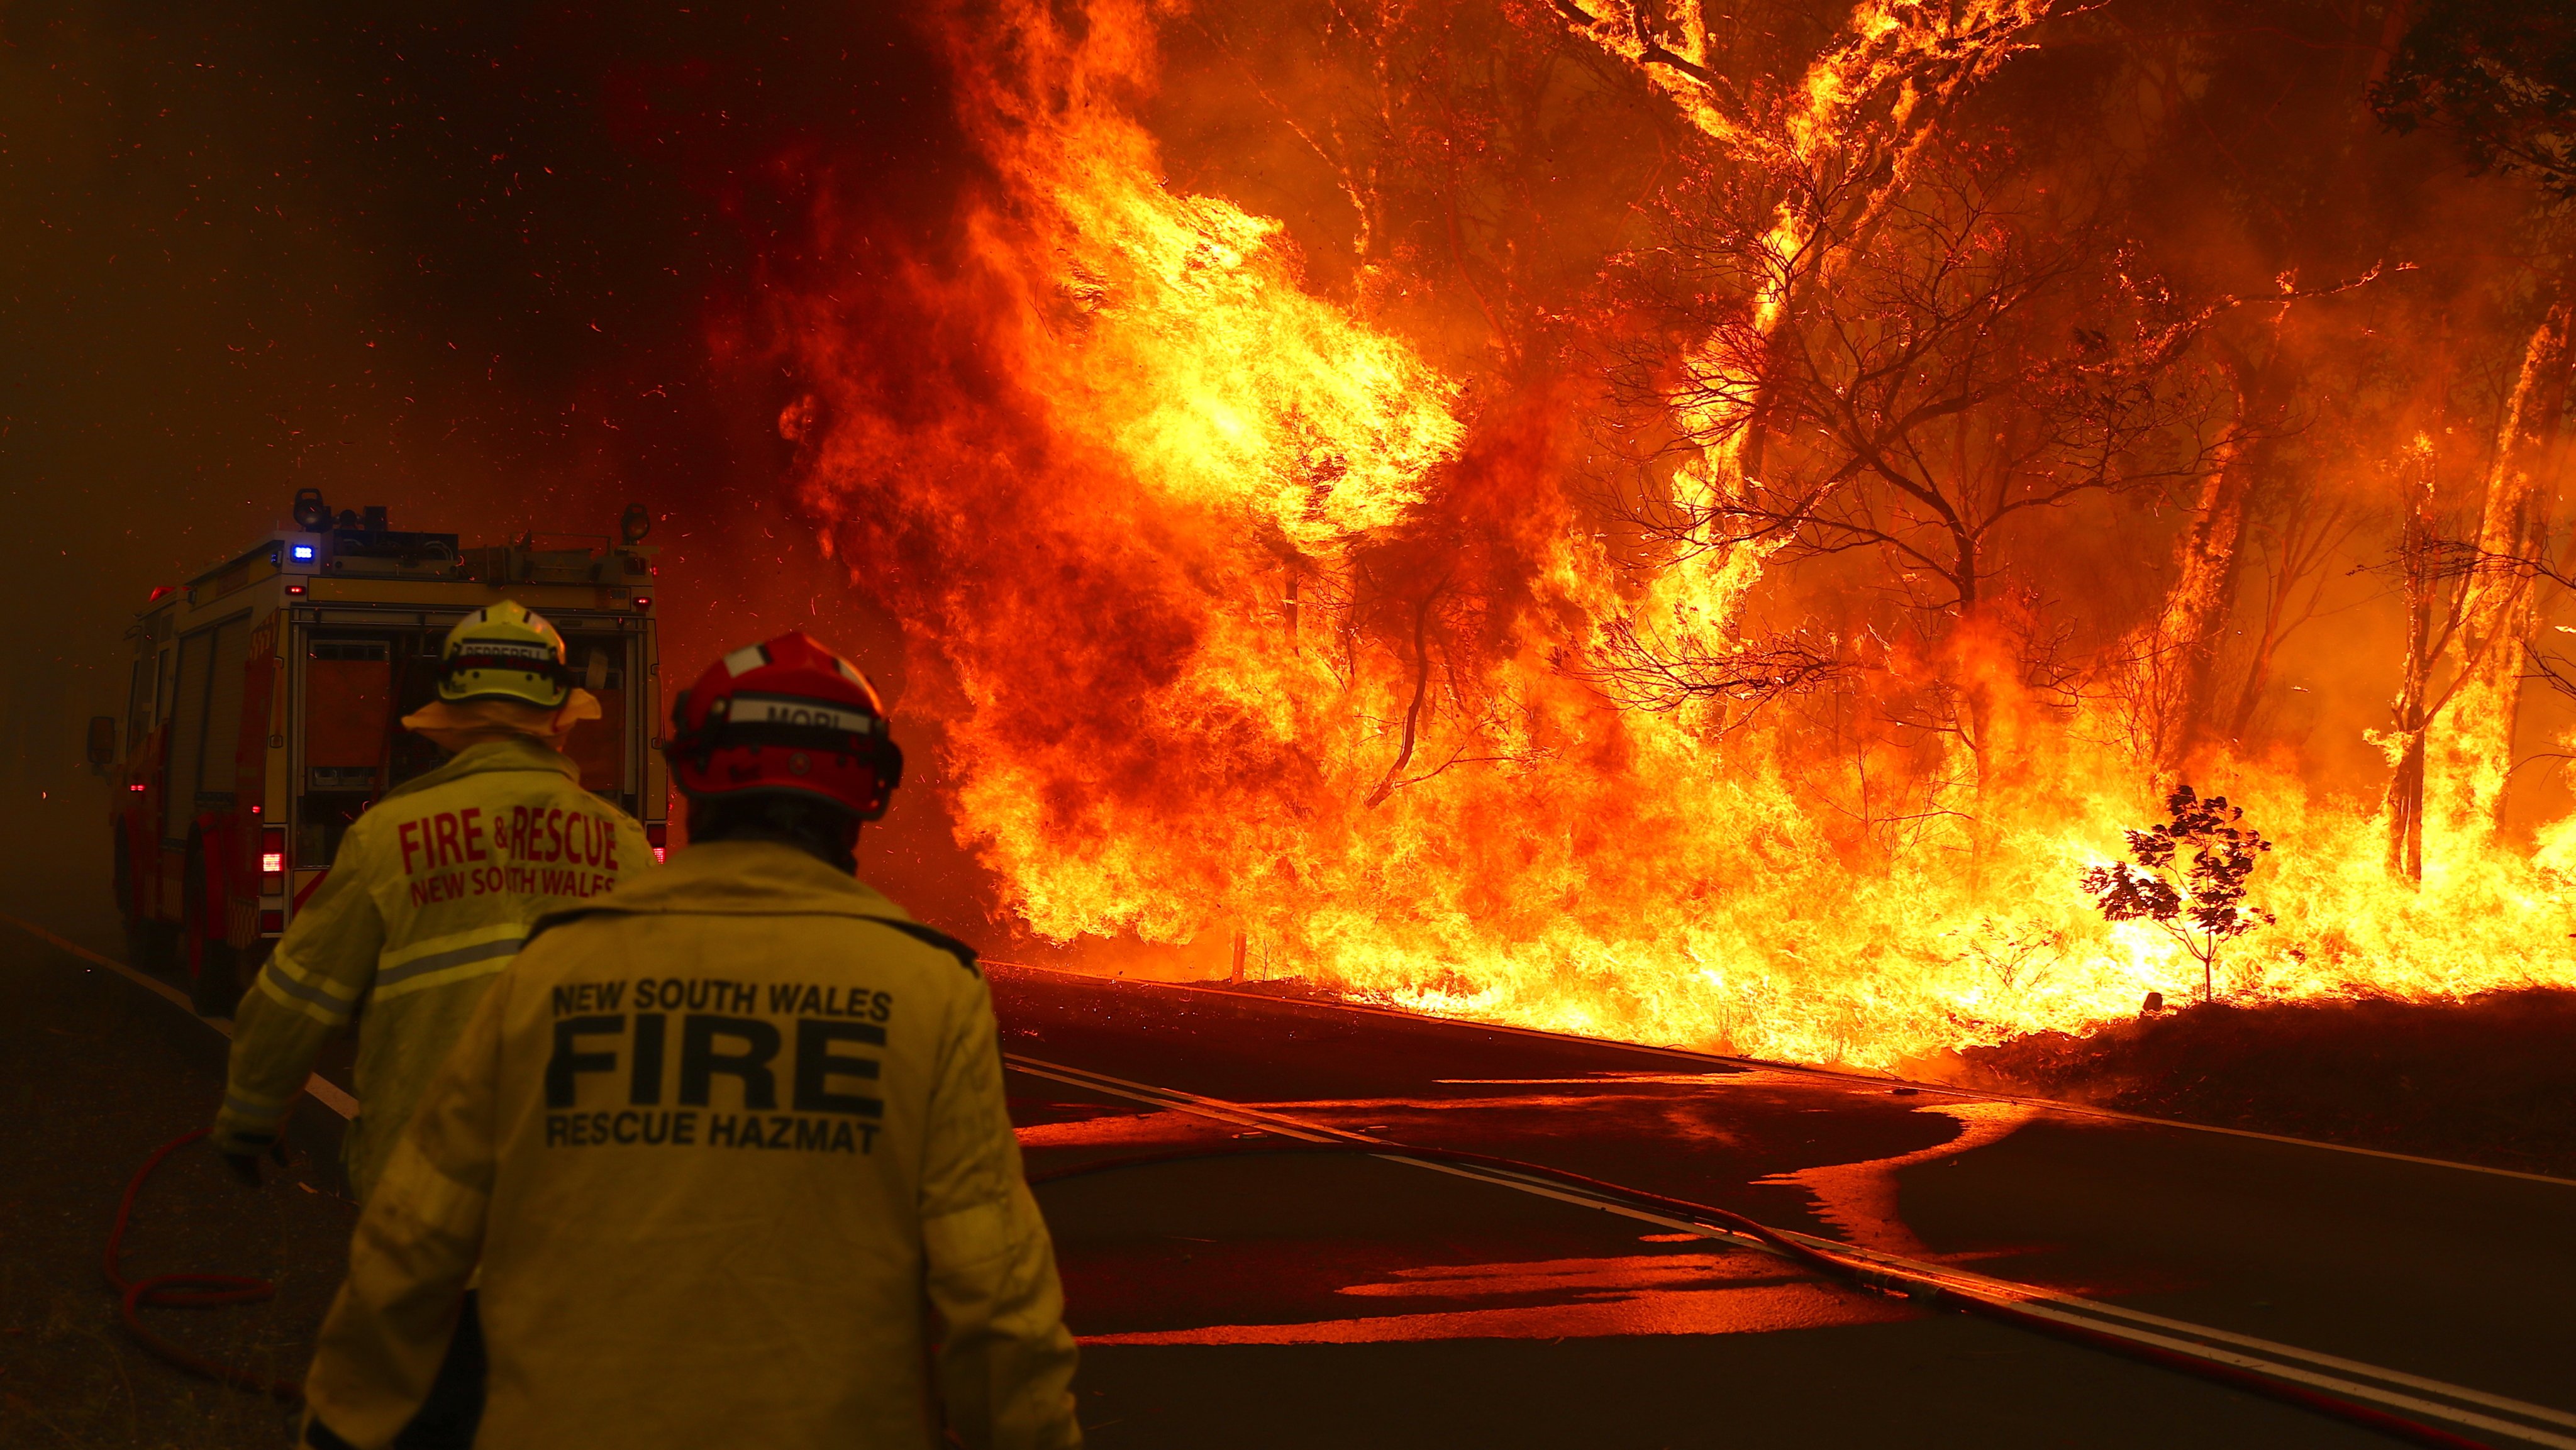 Enormes incêndios florestais atingiram a Austrália em 2019